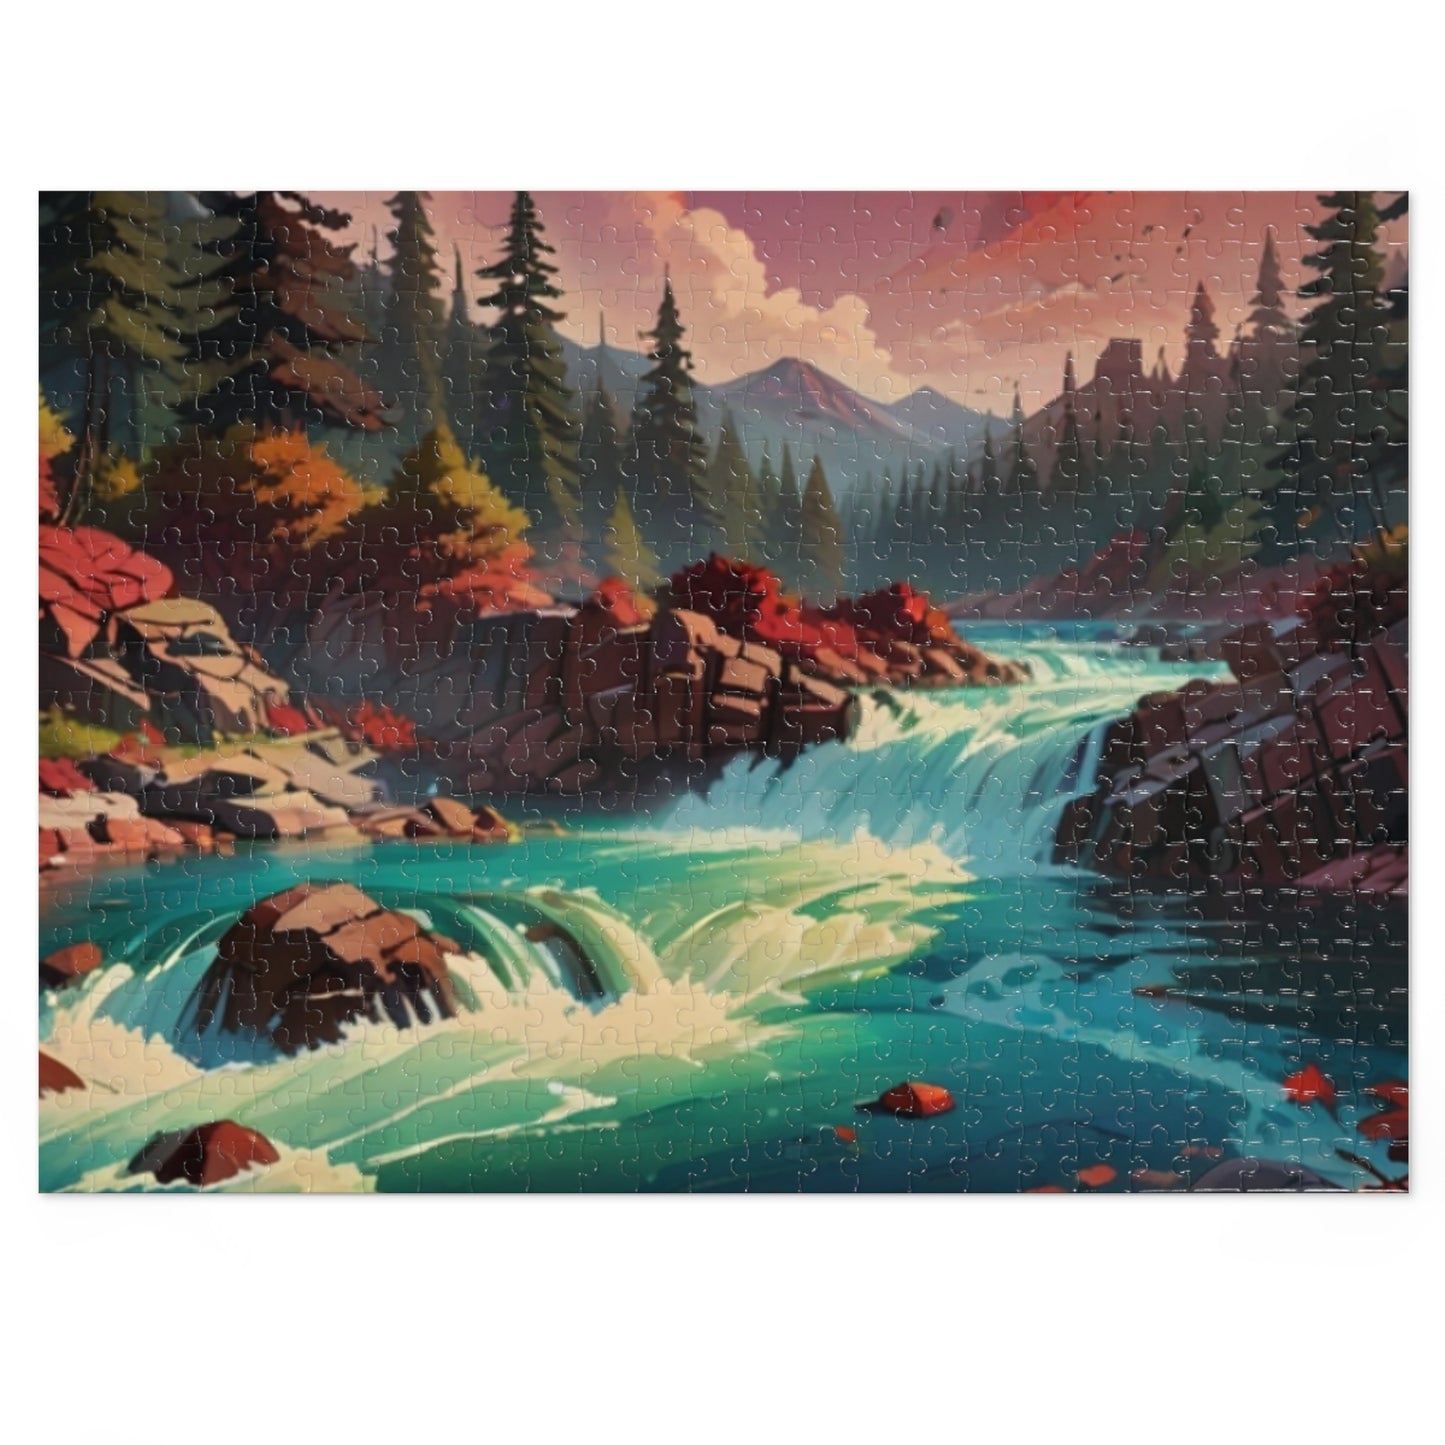 Ruby Rapids Jigsaw Puzzle (30, 110, 252, 500, 1000-Piece)